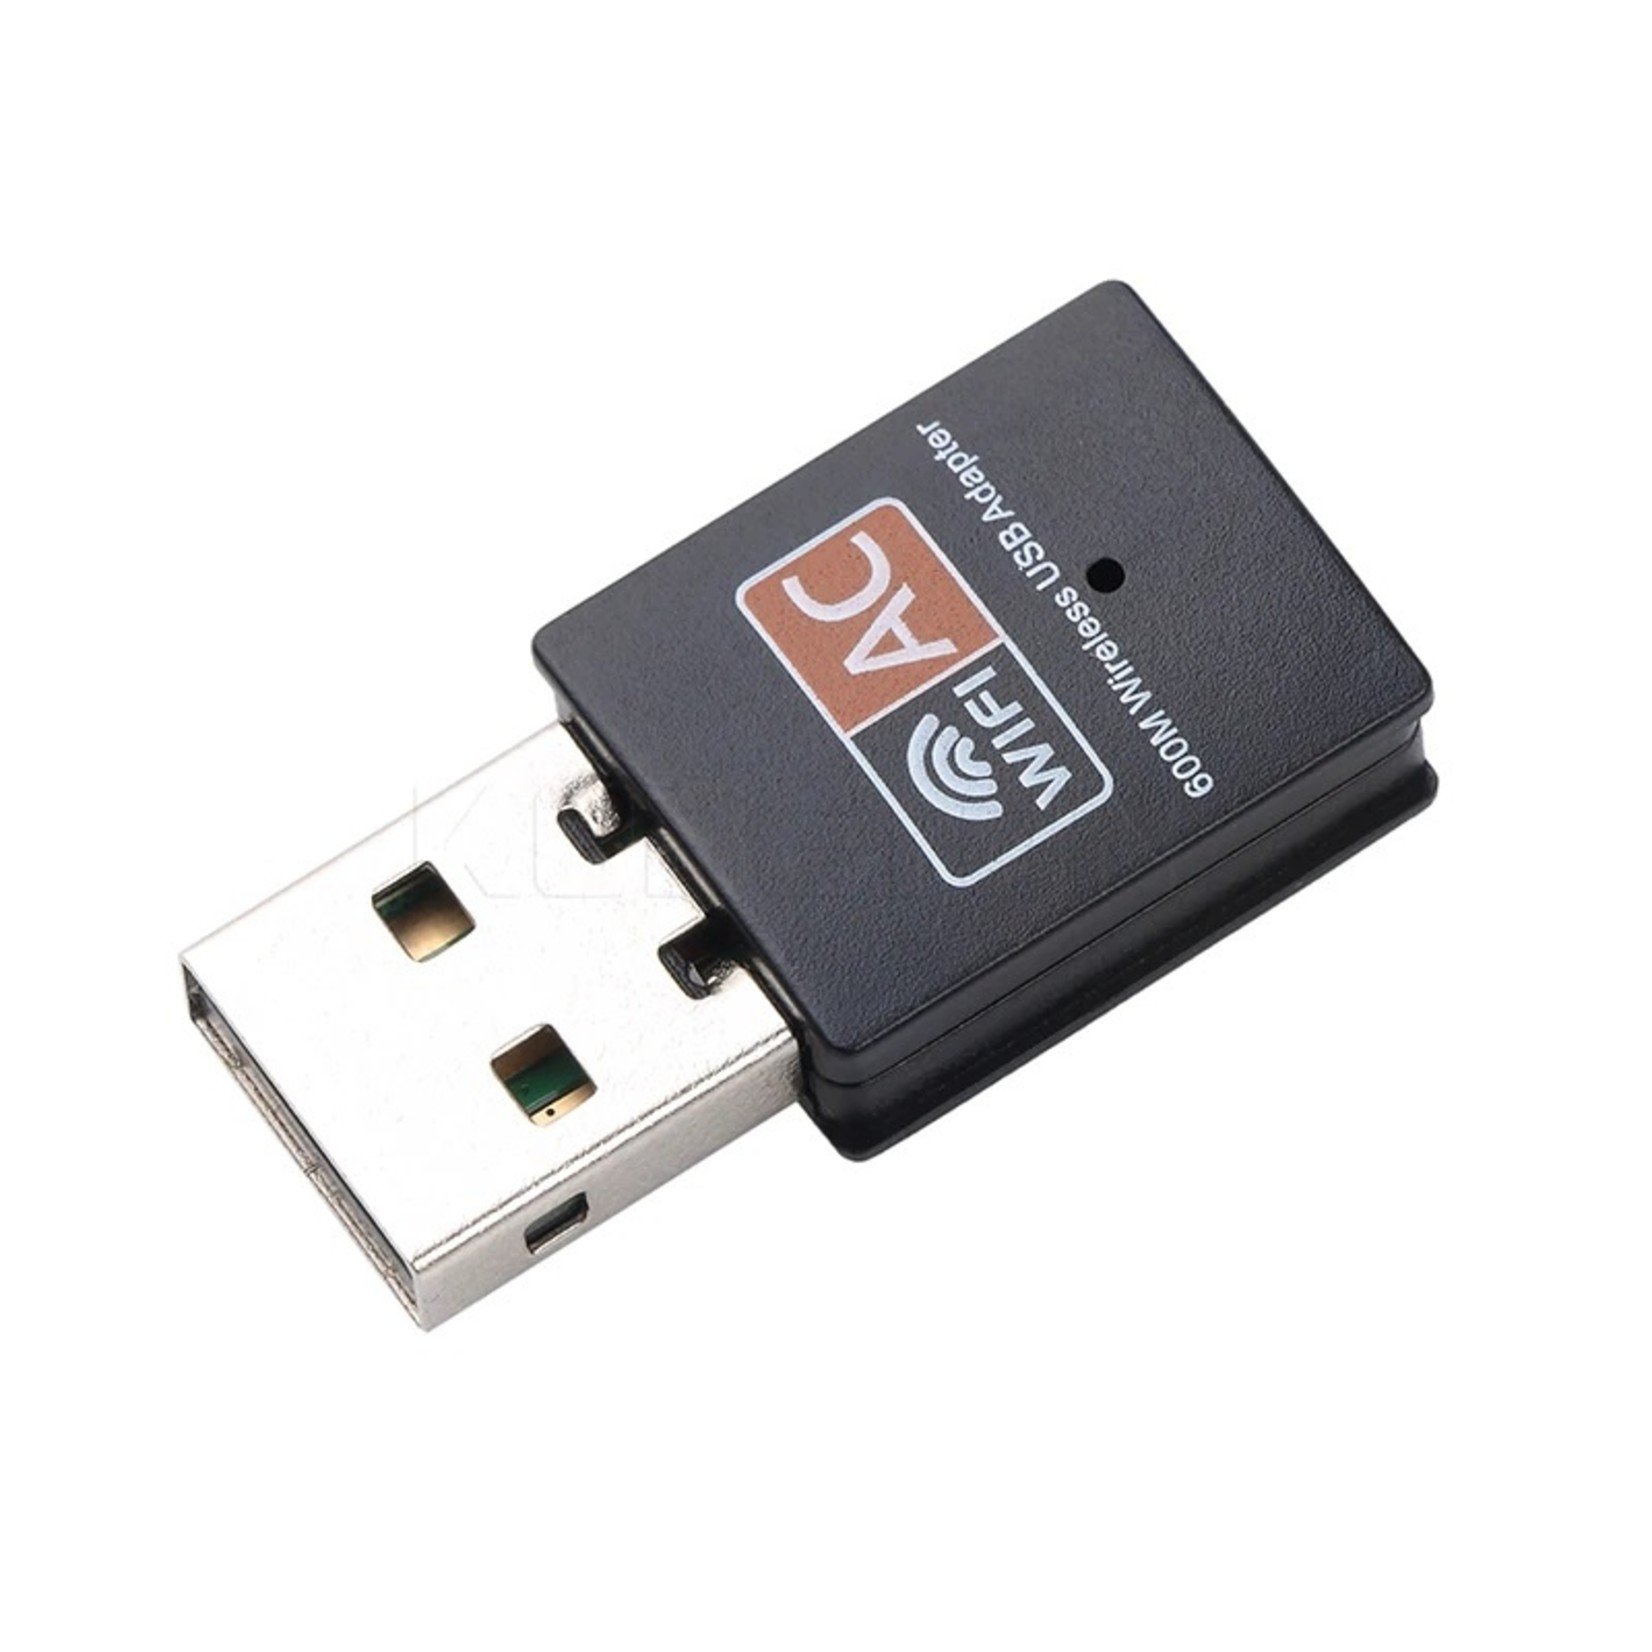 Mini WA350600 - Wifi-Adapter - USB Wifi Adapter - WiFi Dongel Dongle